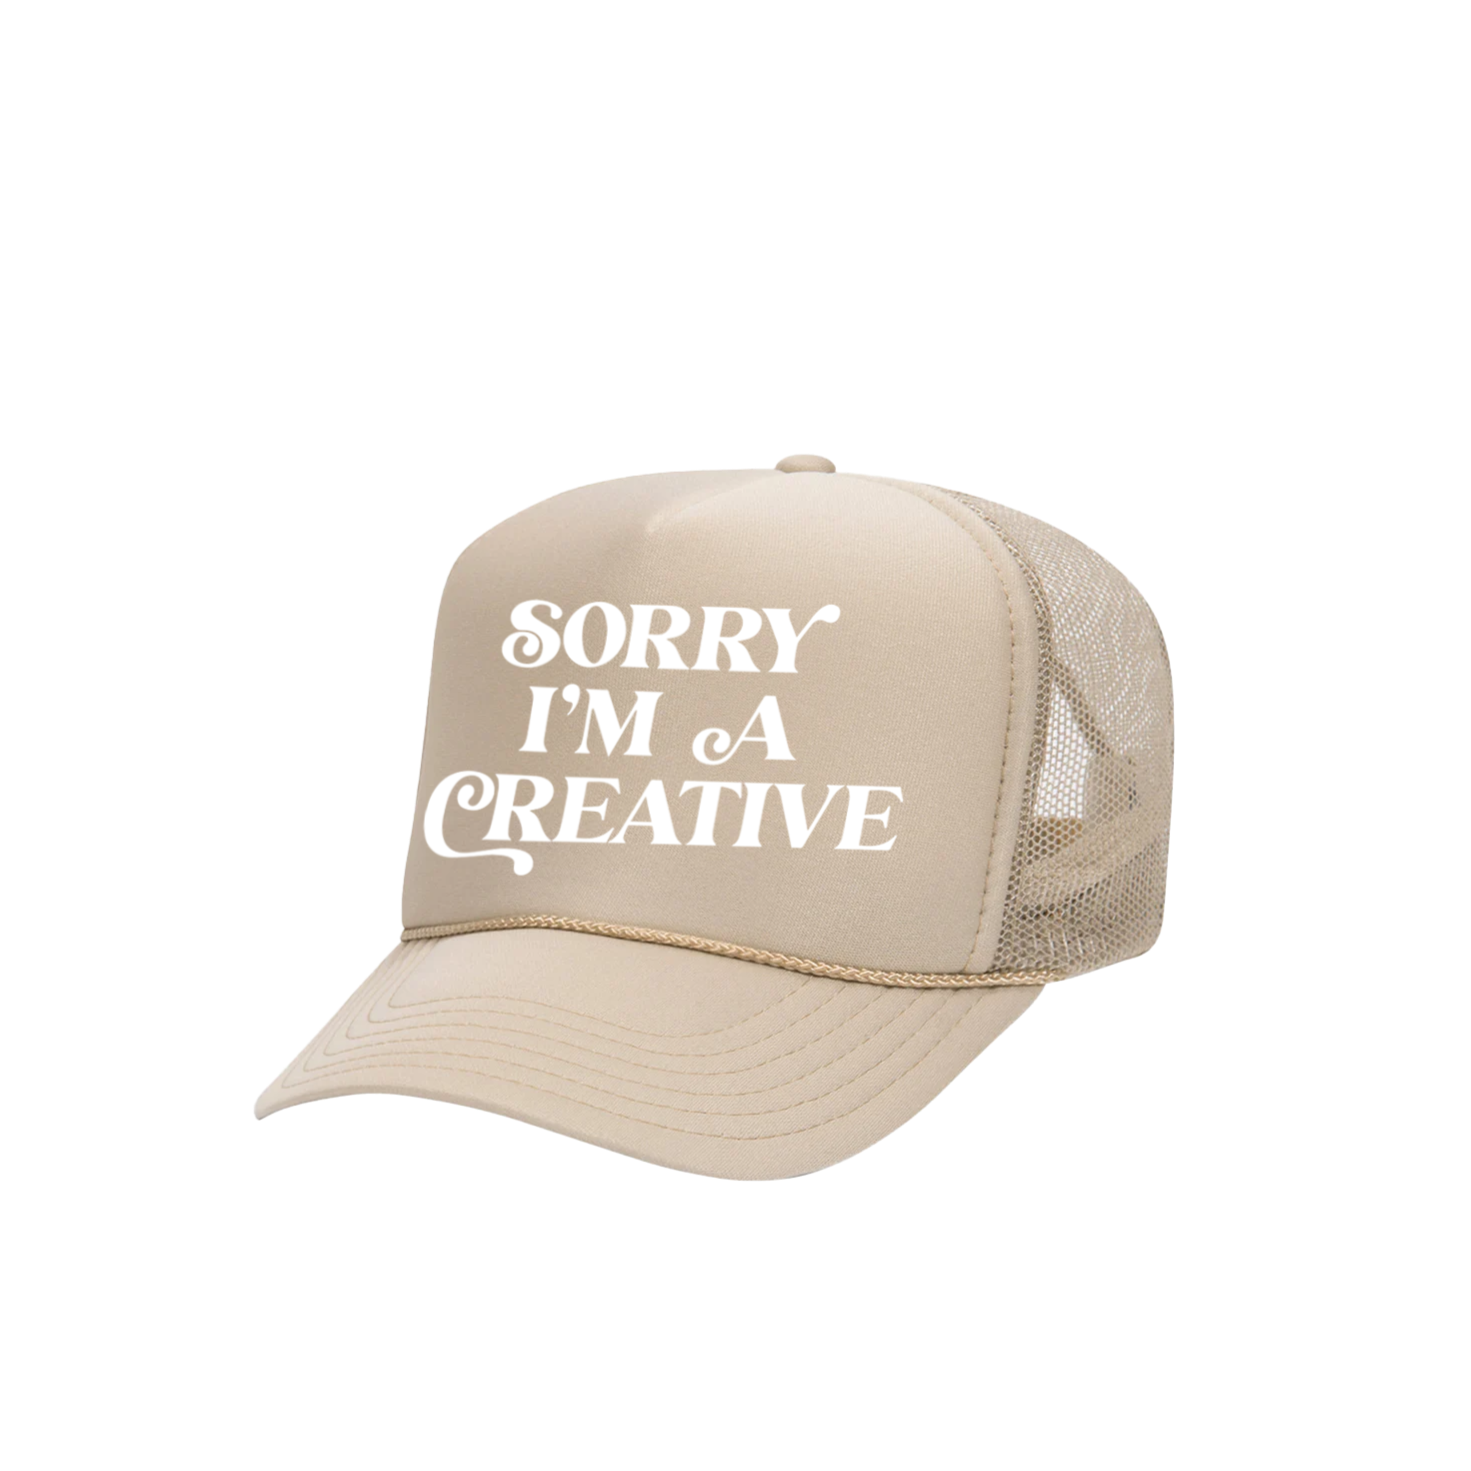 Sorry I'm A Creative - Trucker Hat (Khaki + White)